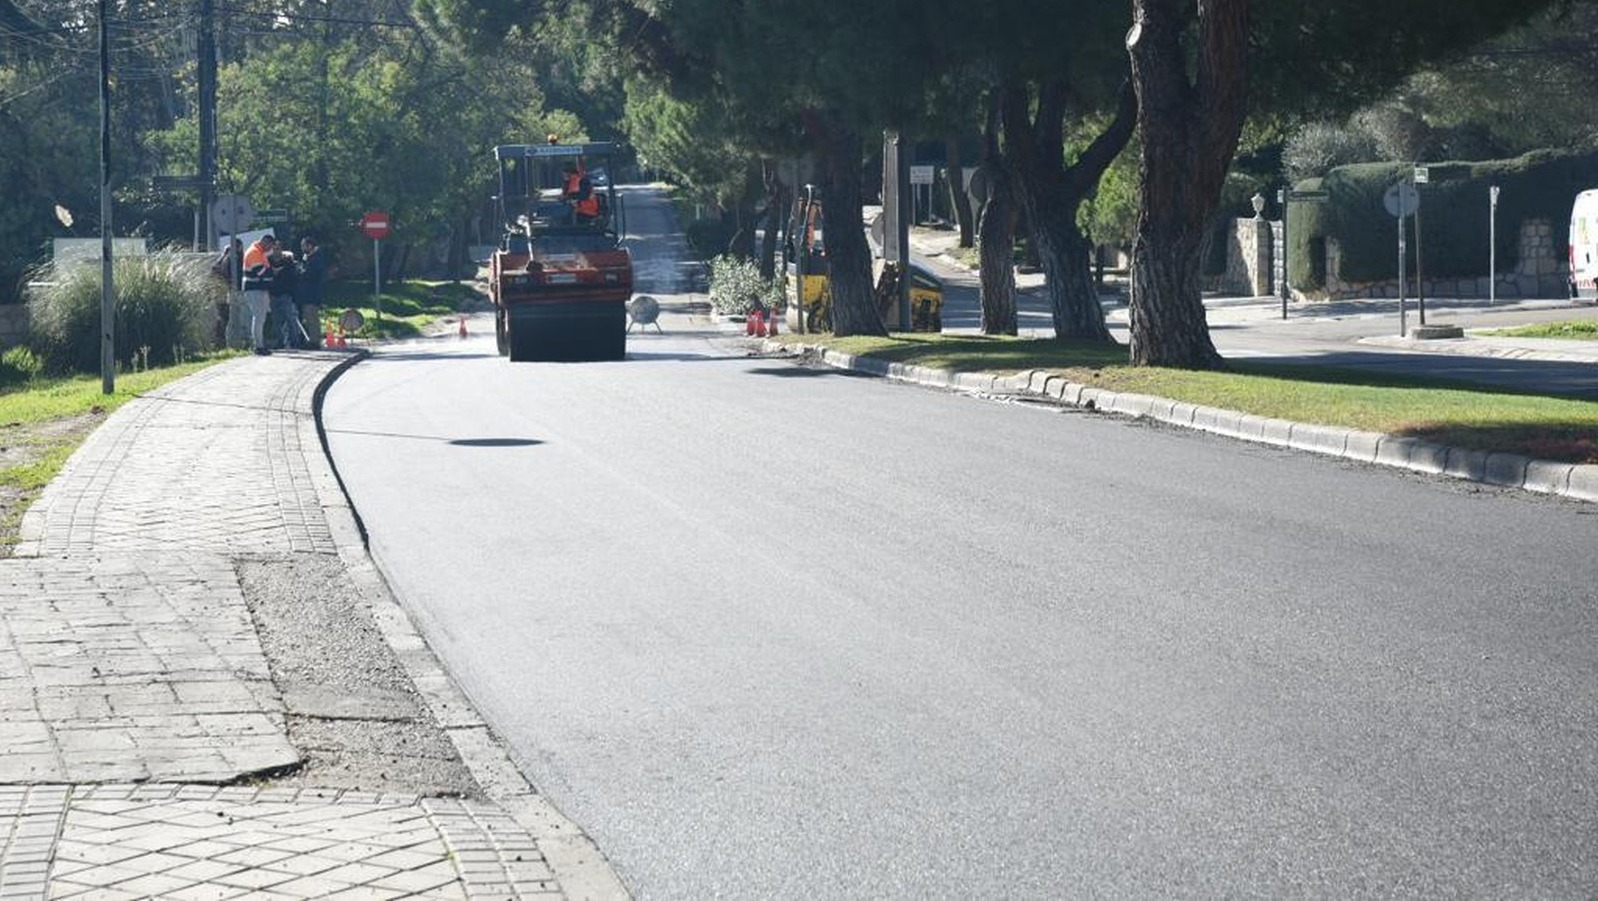 Más de un millón y medio de euros invertidos en la nueva operación asfalto de Boadilla